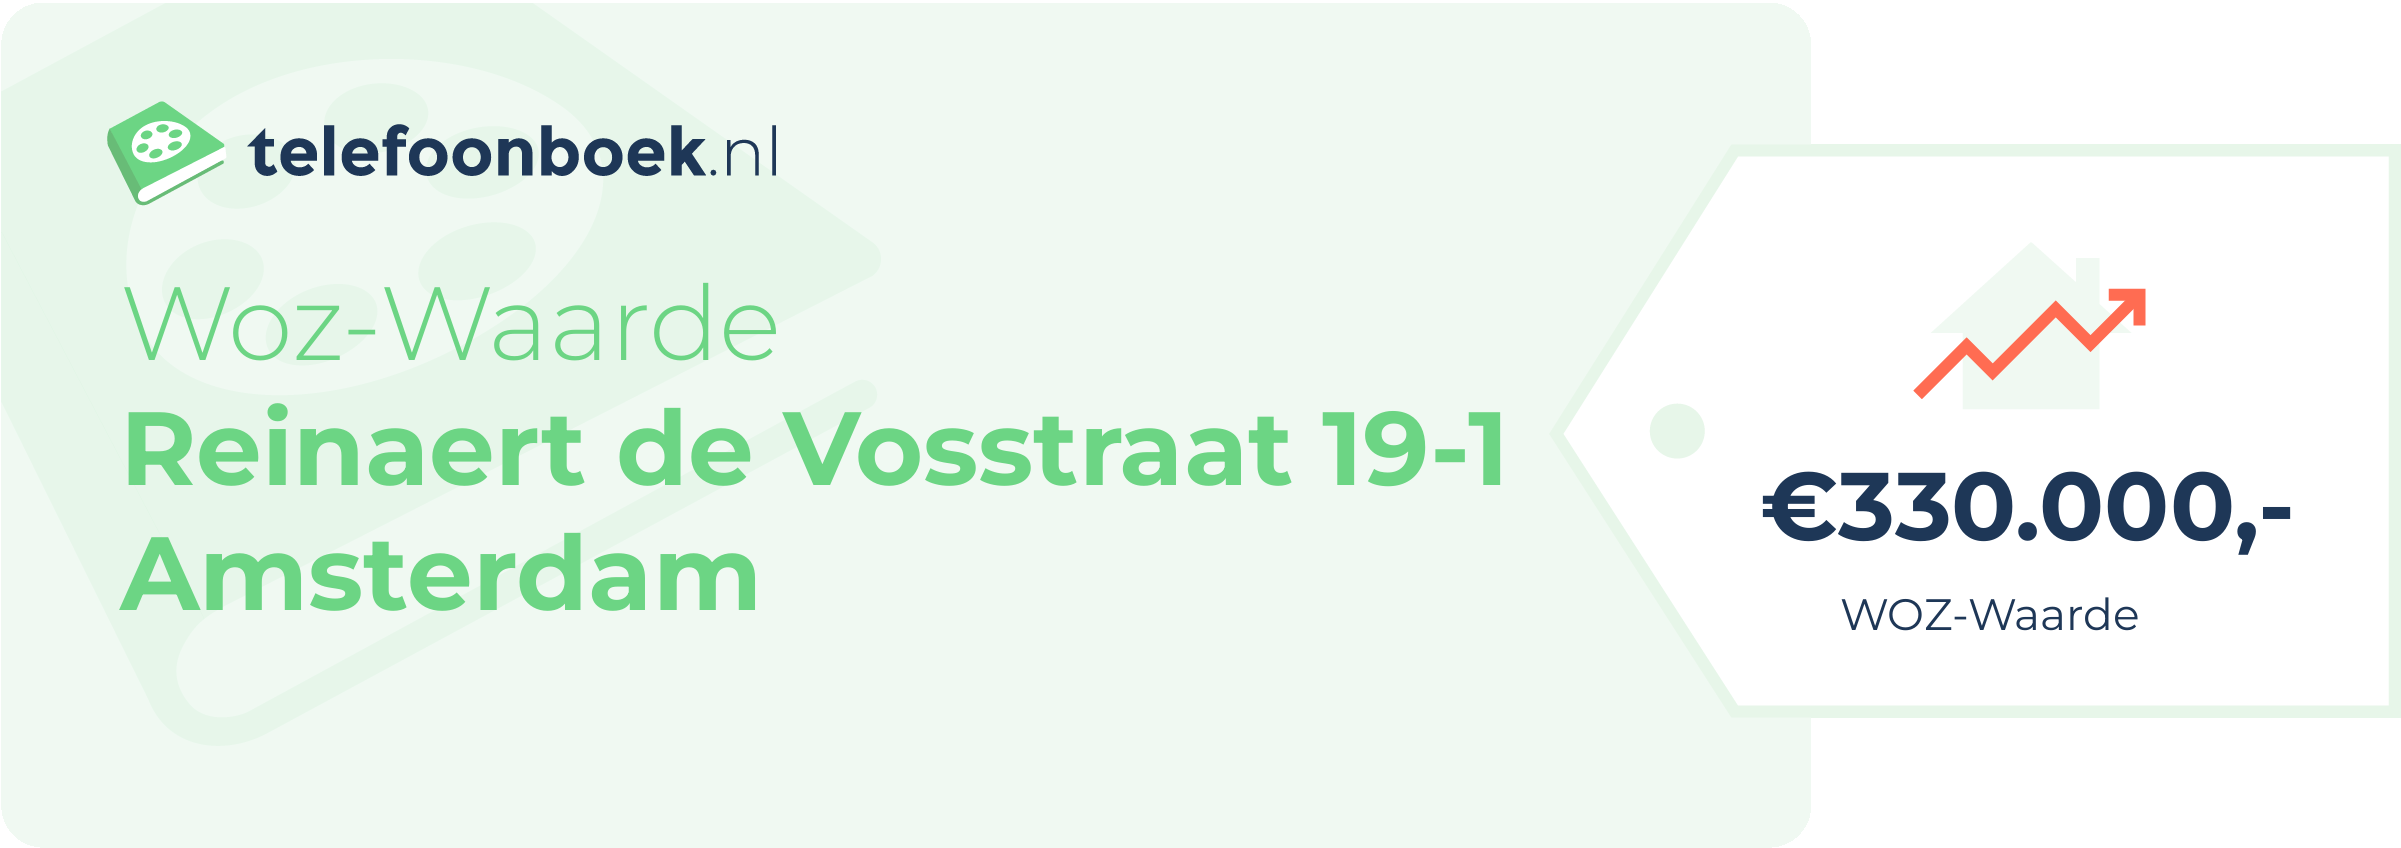 WOZ-waarde Reinaert De Vosstraat 19-1 Amsterdam